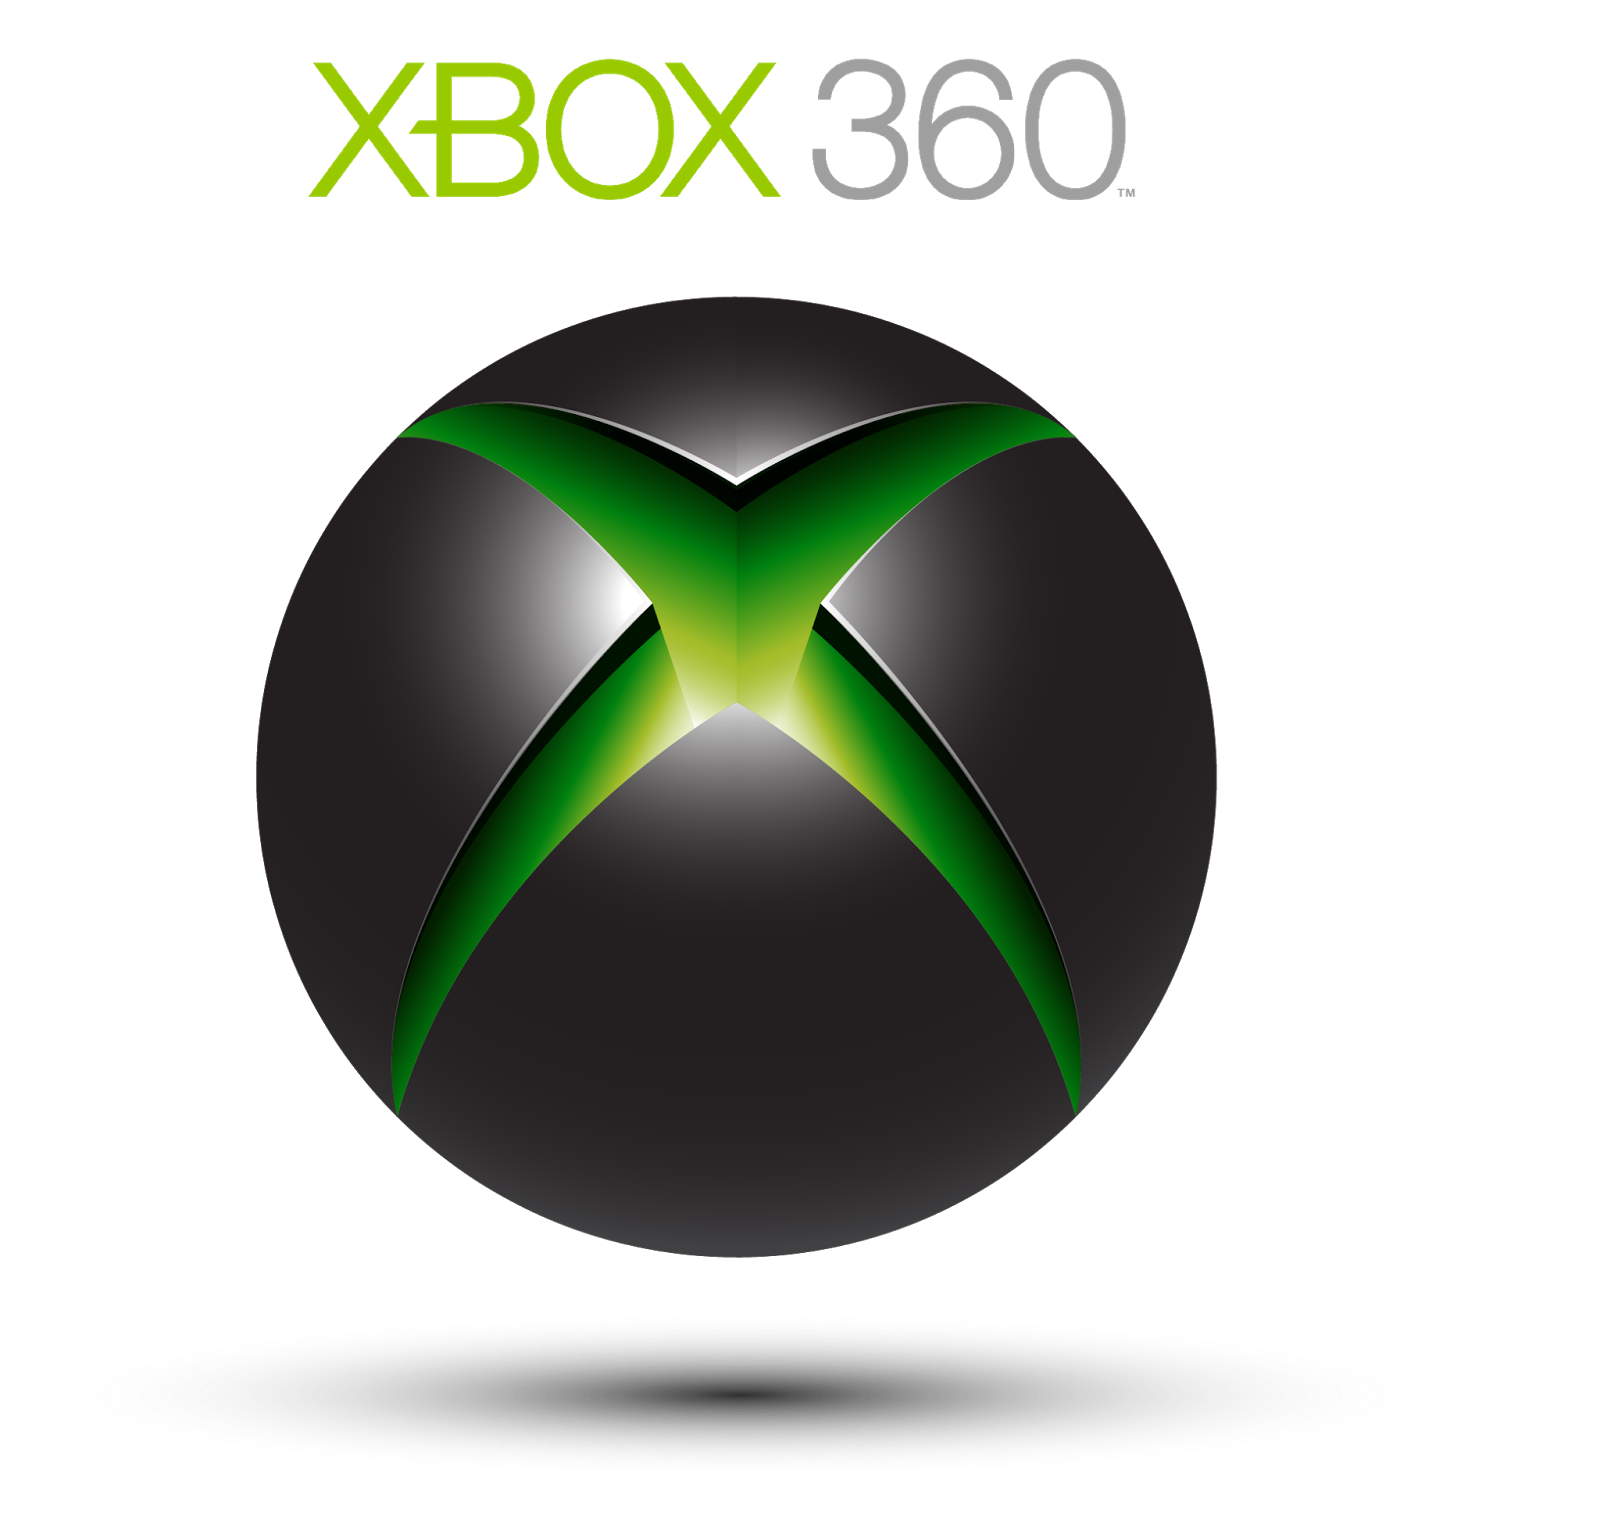 Xbox 360. Xbox 360 лого. Microsoft Xbox 360 logo. Икс бокс 360 значок.